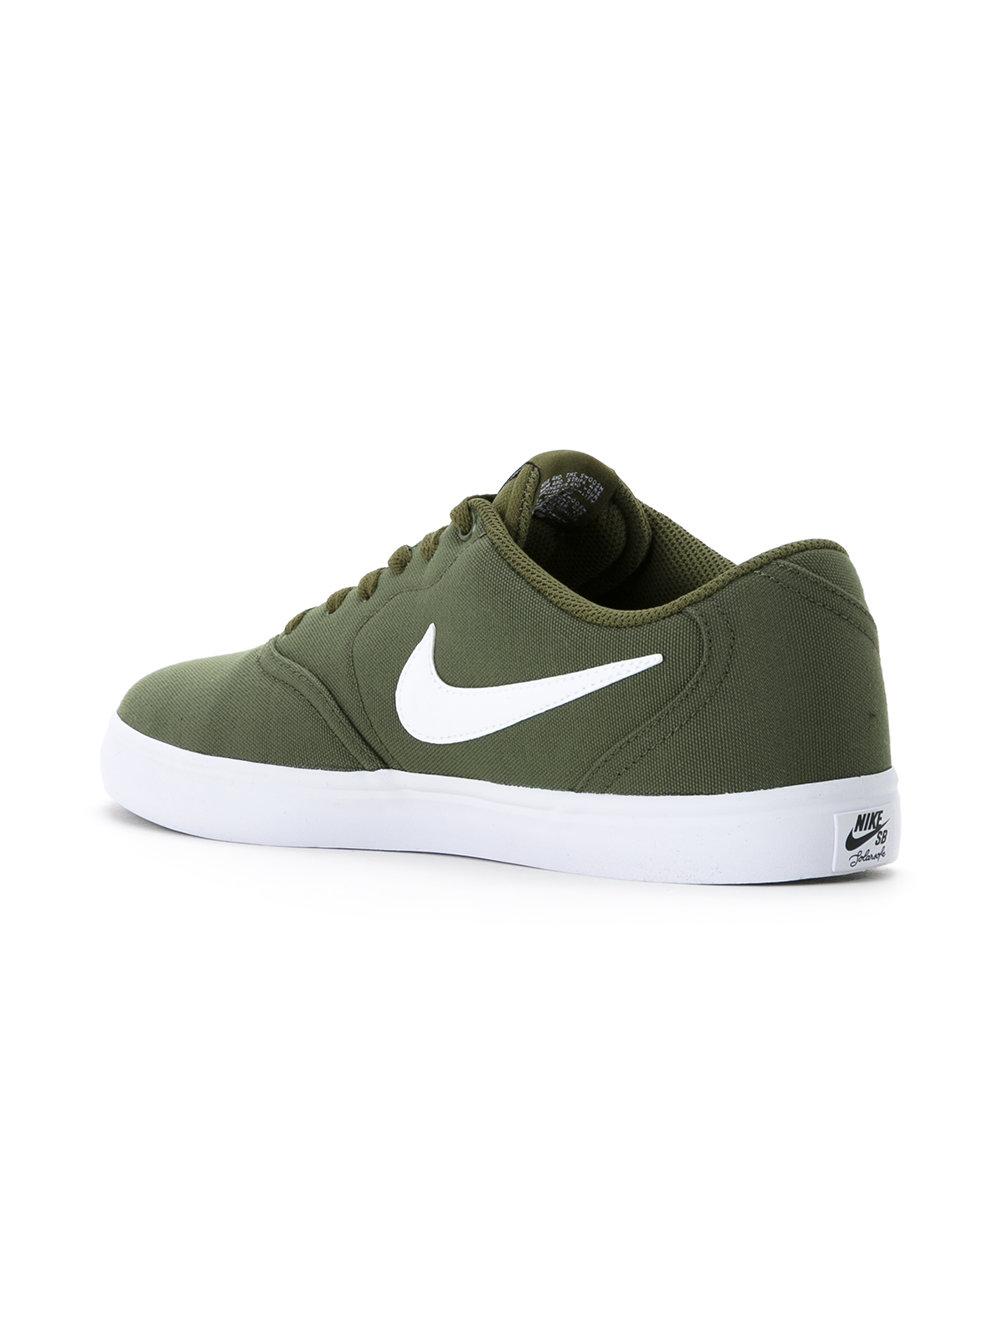 Nike Sb Check Solarsoft Canvas Men's Skateboarding Shoe in Legion Green/White  (Green) for Men - Lyst